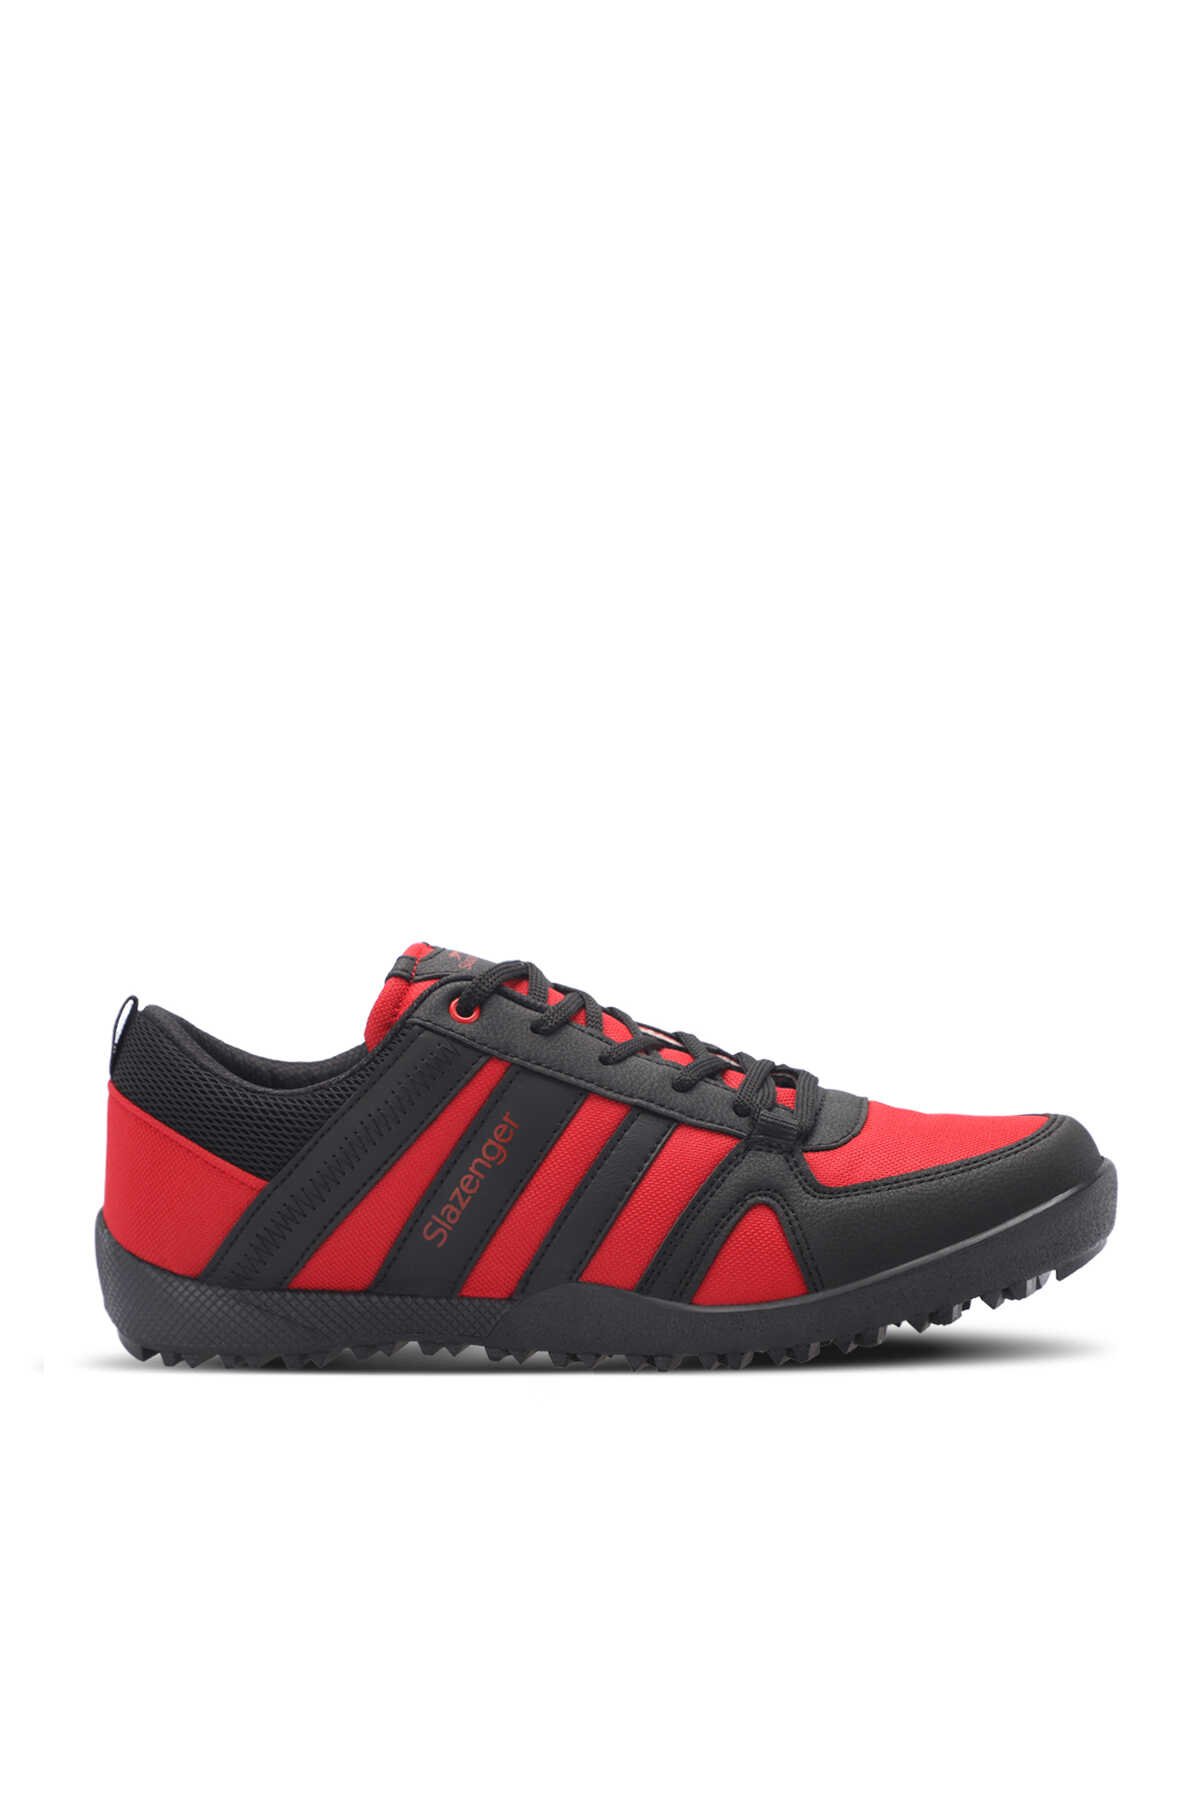 Slazenger - Slazenger ALGAR I Kadın Sneaker Ayakkabı Kırmızı / Siyah